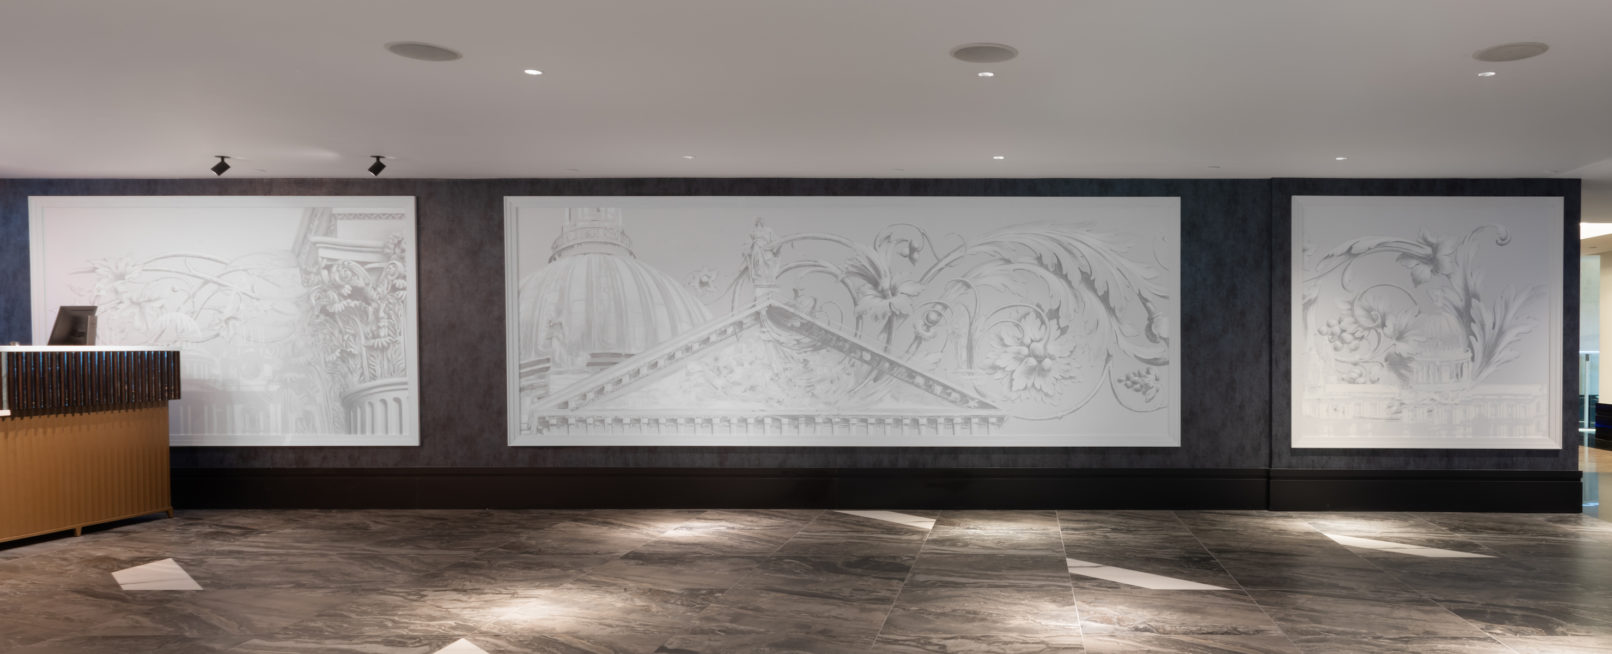 Panoramique mural grisaille hôtel London